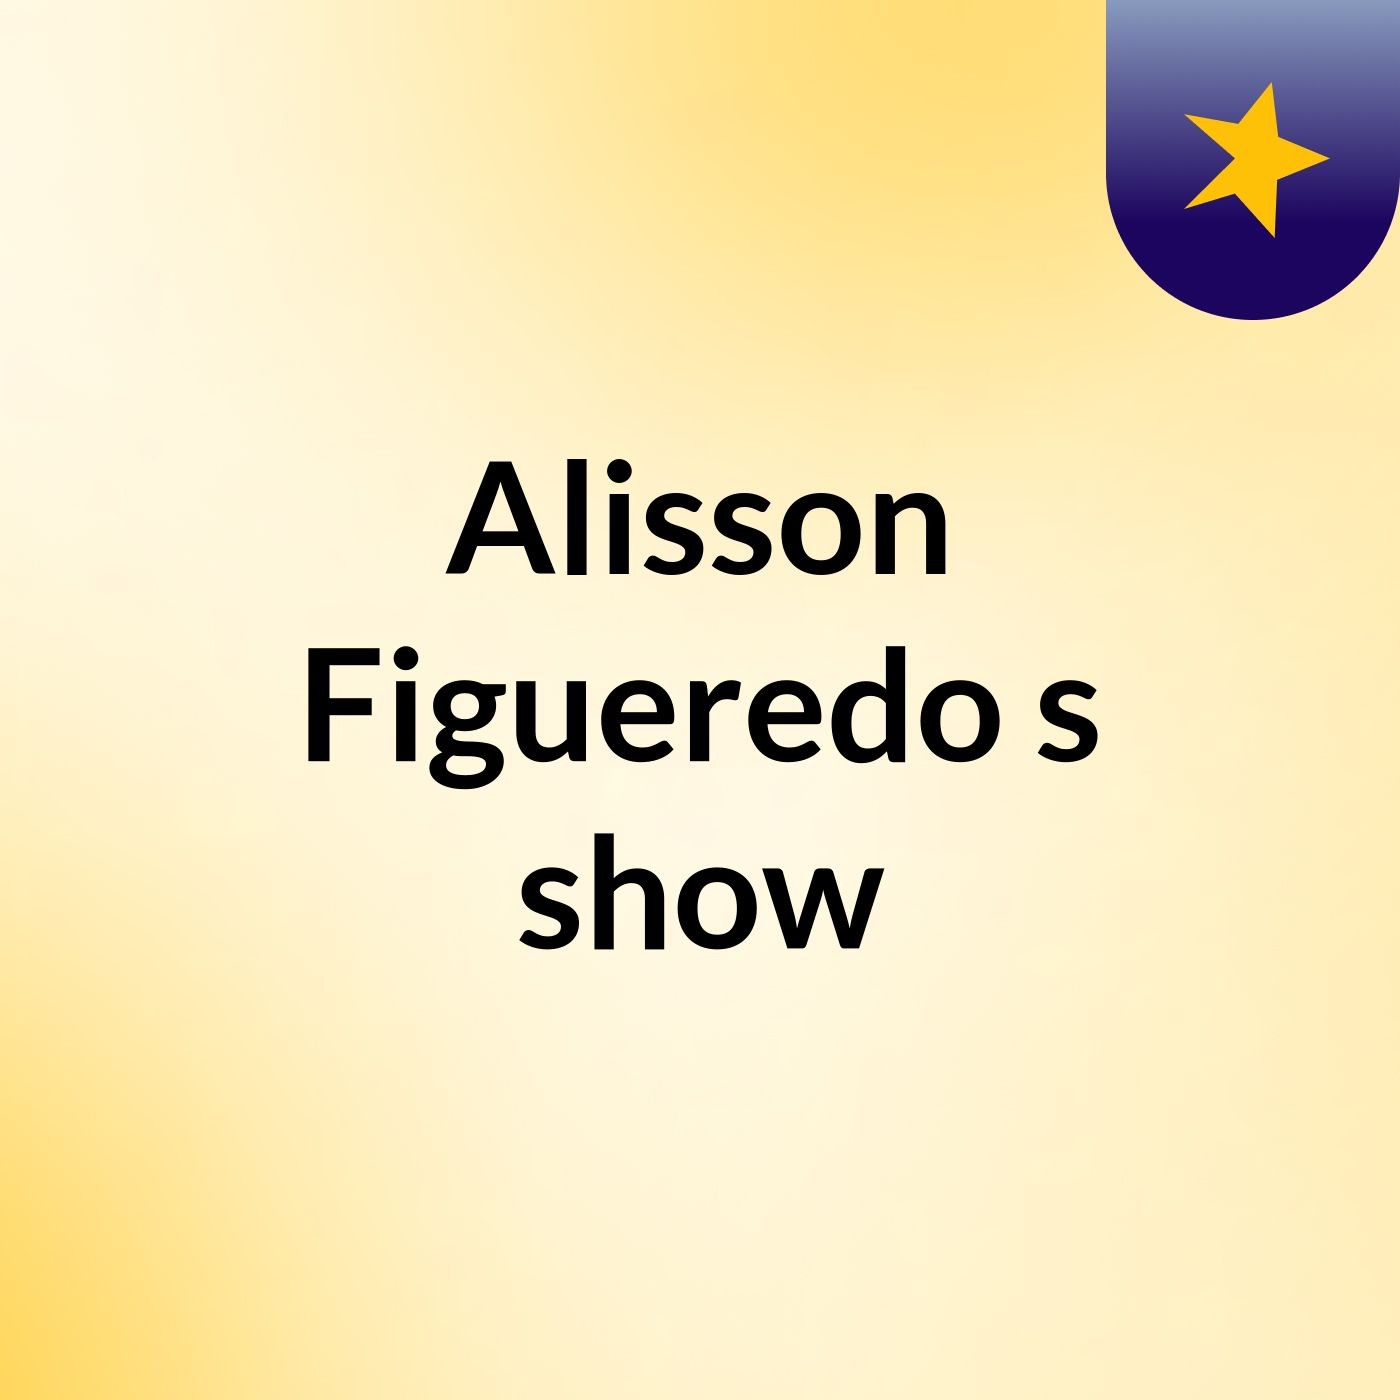 Alisson Figueredo's show